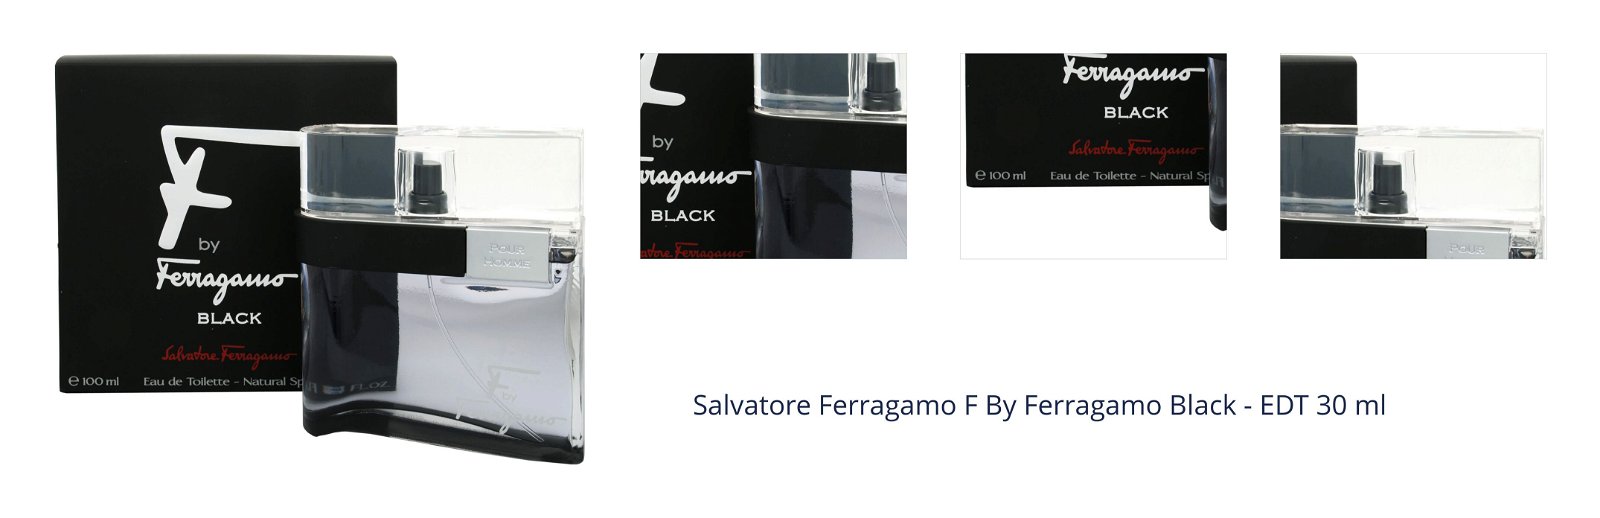 Salvatore Ferragamo F By Ferragamo Black - EDT 30 ml 1